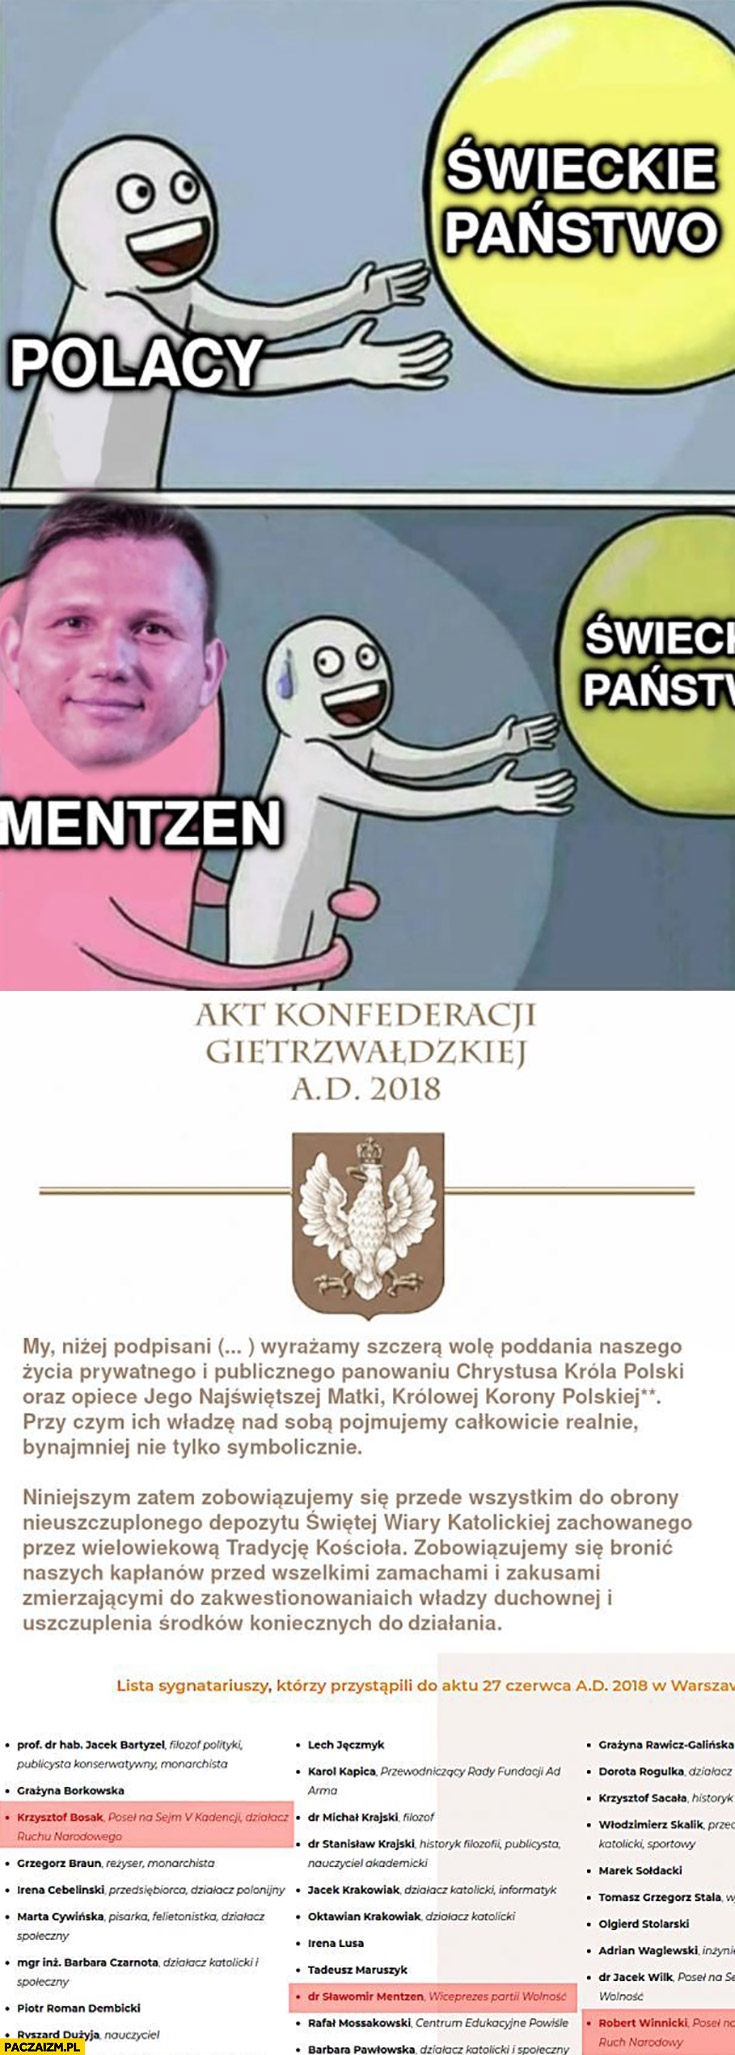 Polacy chcą świeckie państwo, Mentzen nie pozwala podpisał konfederacje gietrzwaldzka